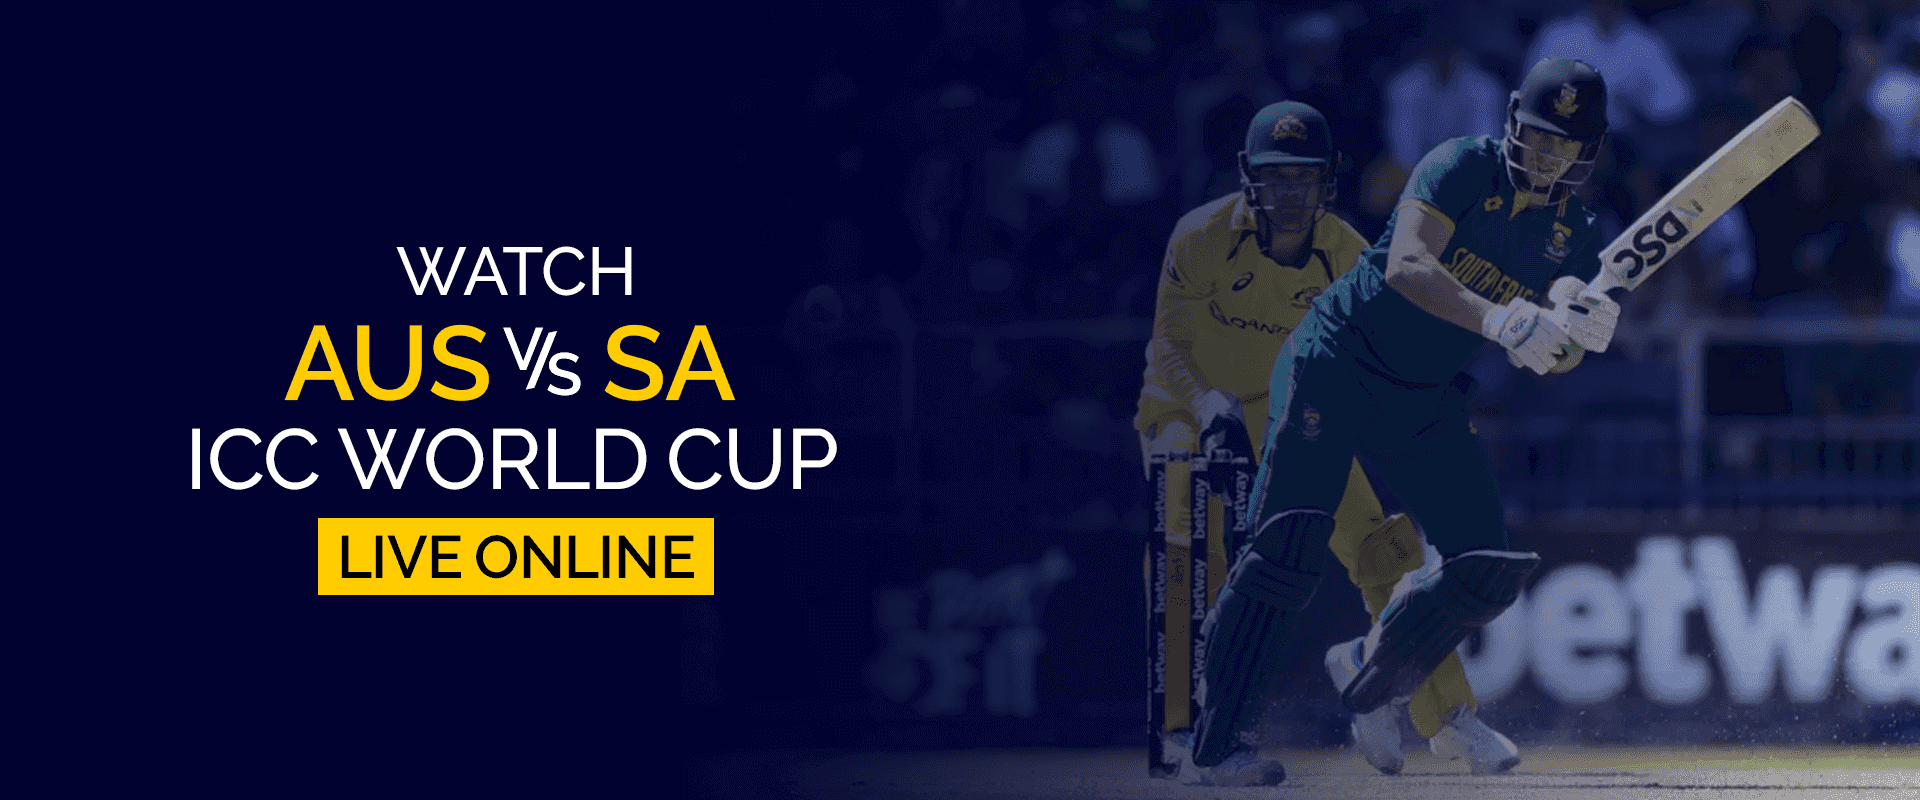 Regardez la Coupe du monde AUS vs SA ICC en direct en ligne